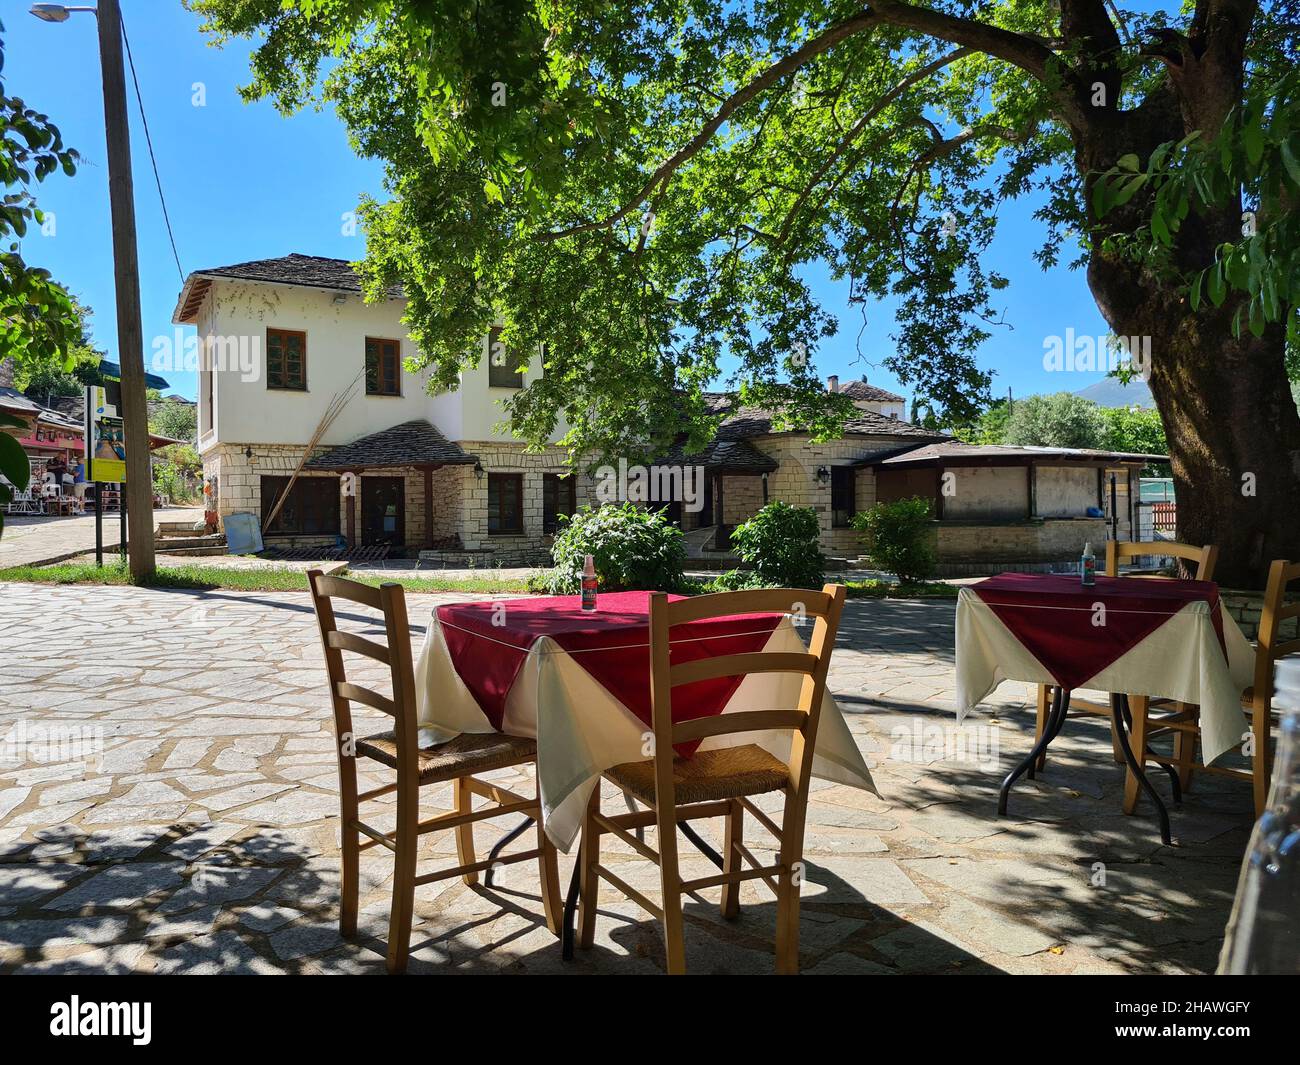 Ioannina, Grèce - 27 juin 2021: Table avec pulvérisateur pour la désinfection pendant la pandémie de corona dans le jardin d'un restaurant Banque D'Images